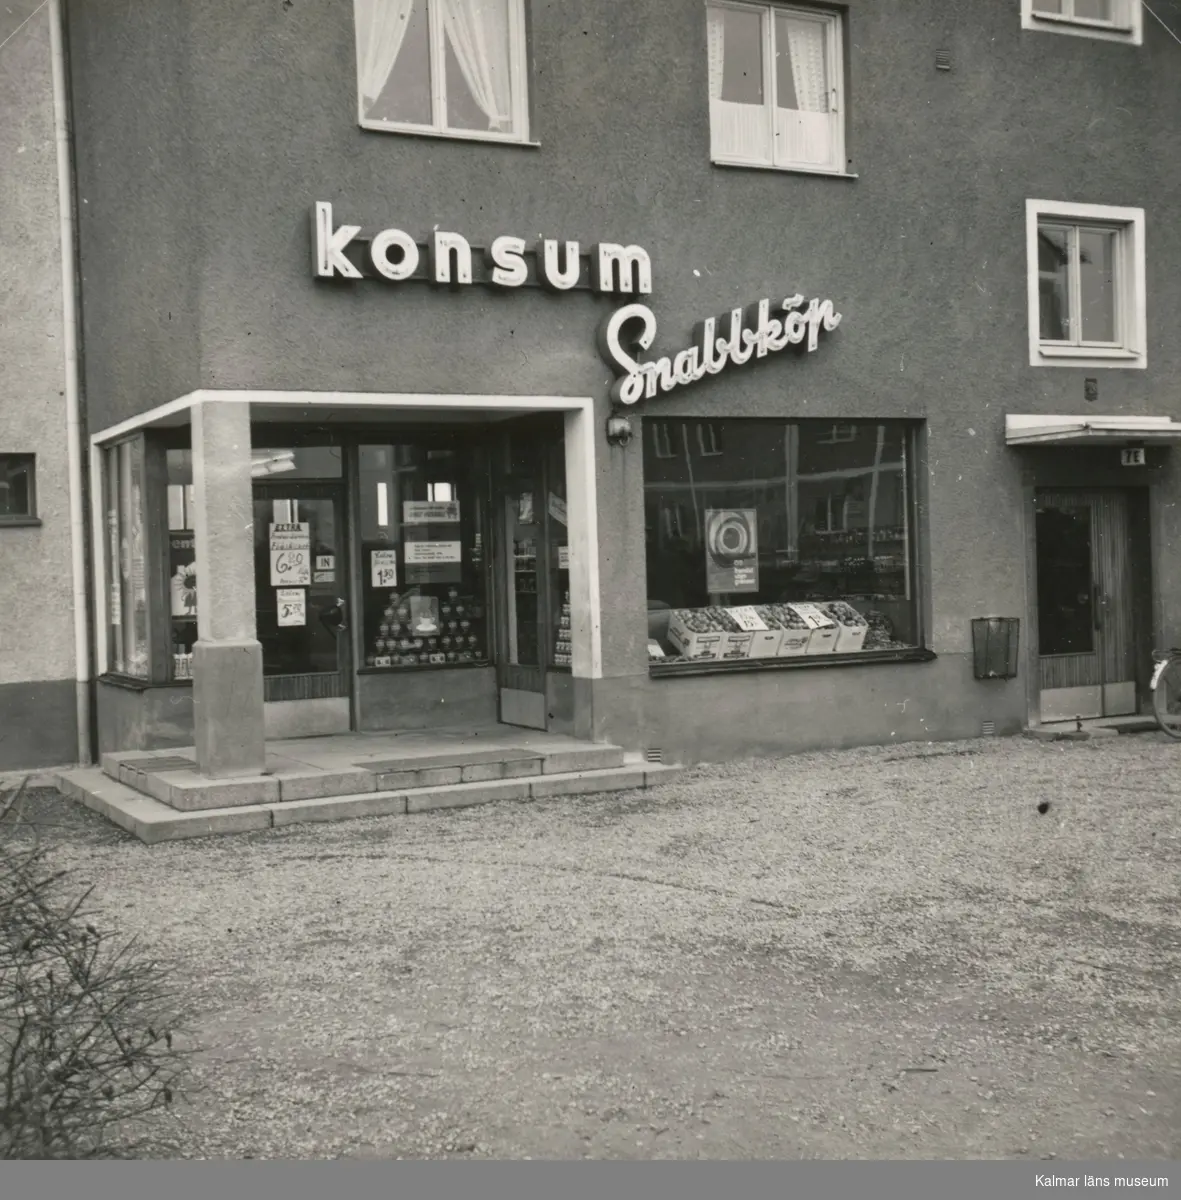 Konsumbutiken på Tegelviksvägen. Den första snabbköpsbutiken.